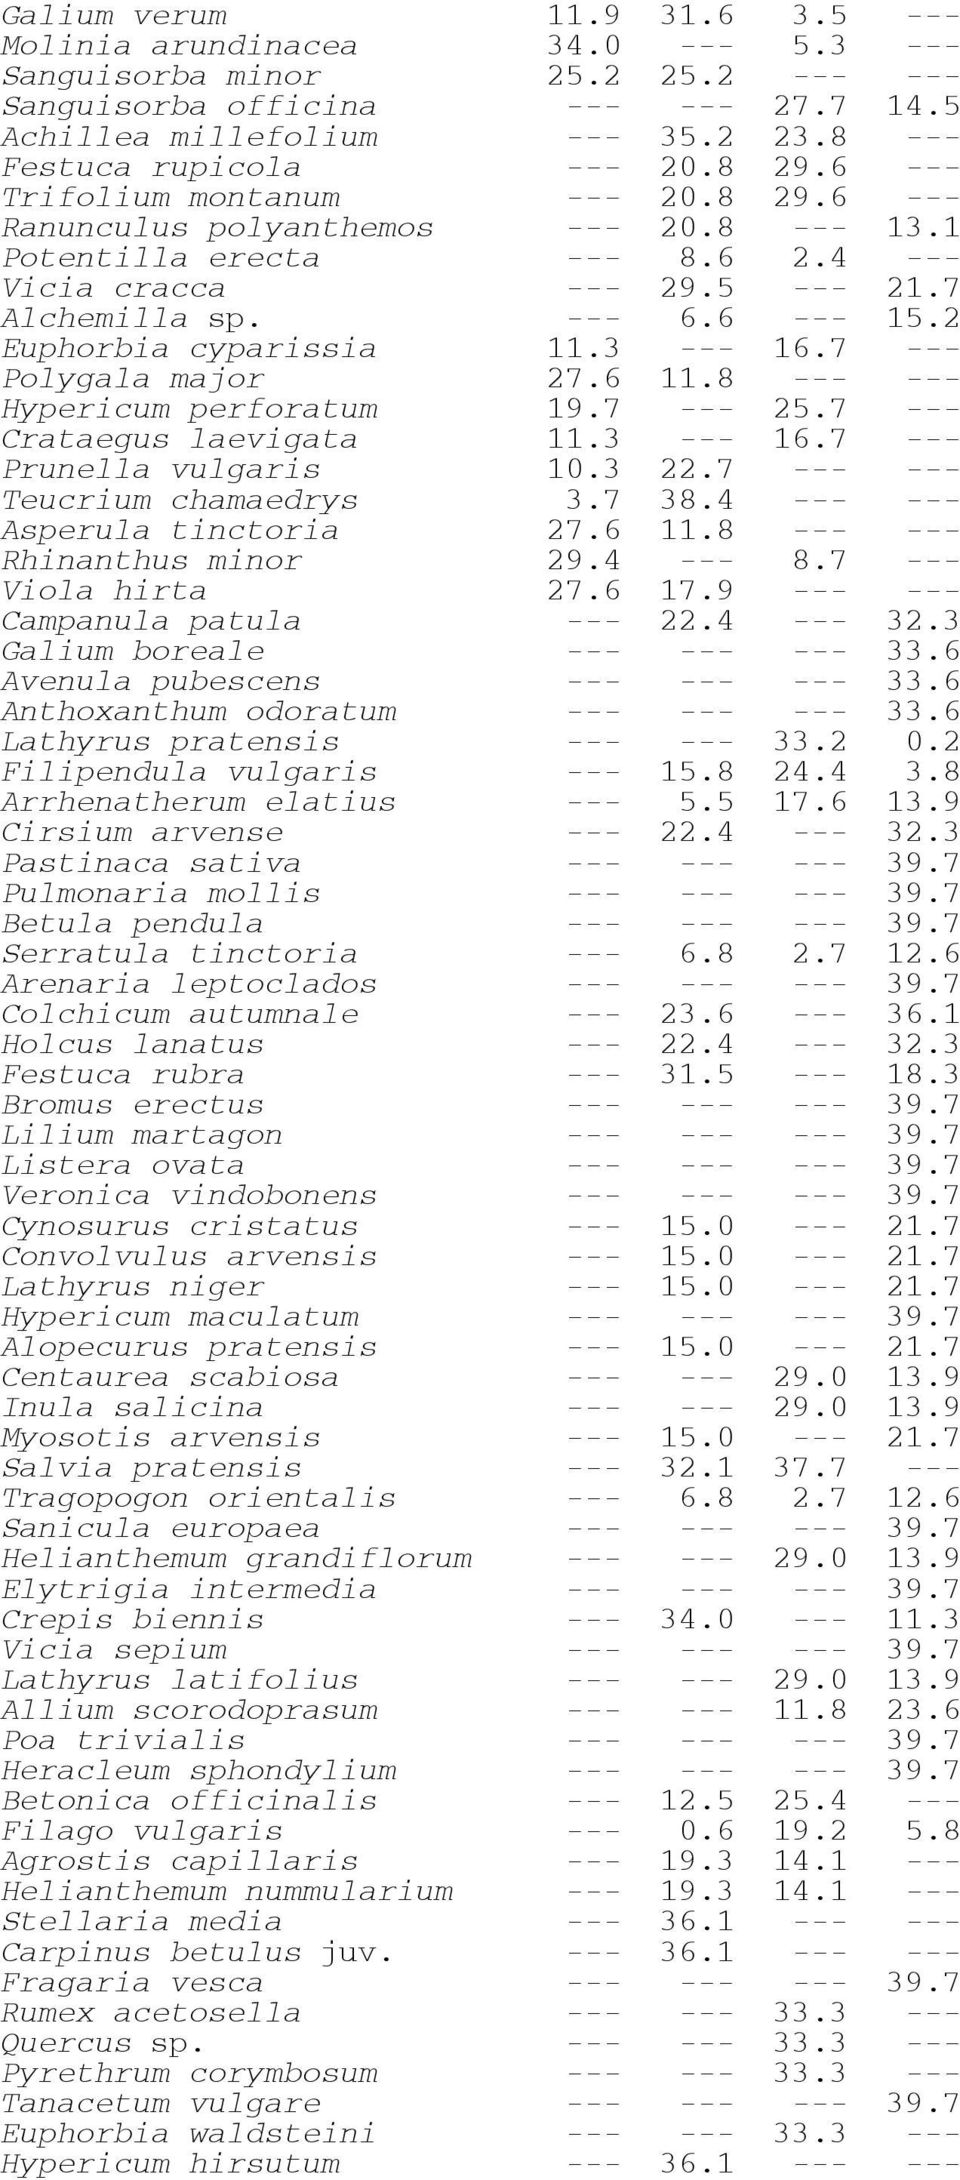 --- 6.6 --- 15.2 Euphorbia cyparissia 11.3 --- 16.7 --- Polygala major 27.6 11.8 --- --- Hypericum perforatum 19.7 --- 25.7 --- Crataegus laevigata 11.3 --- 16.7 --- Prunella vulgaris 10.3 22.